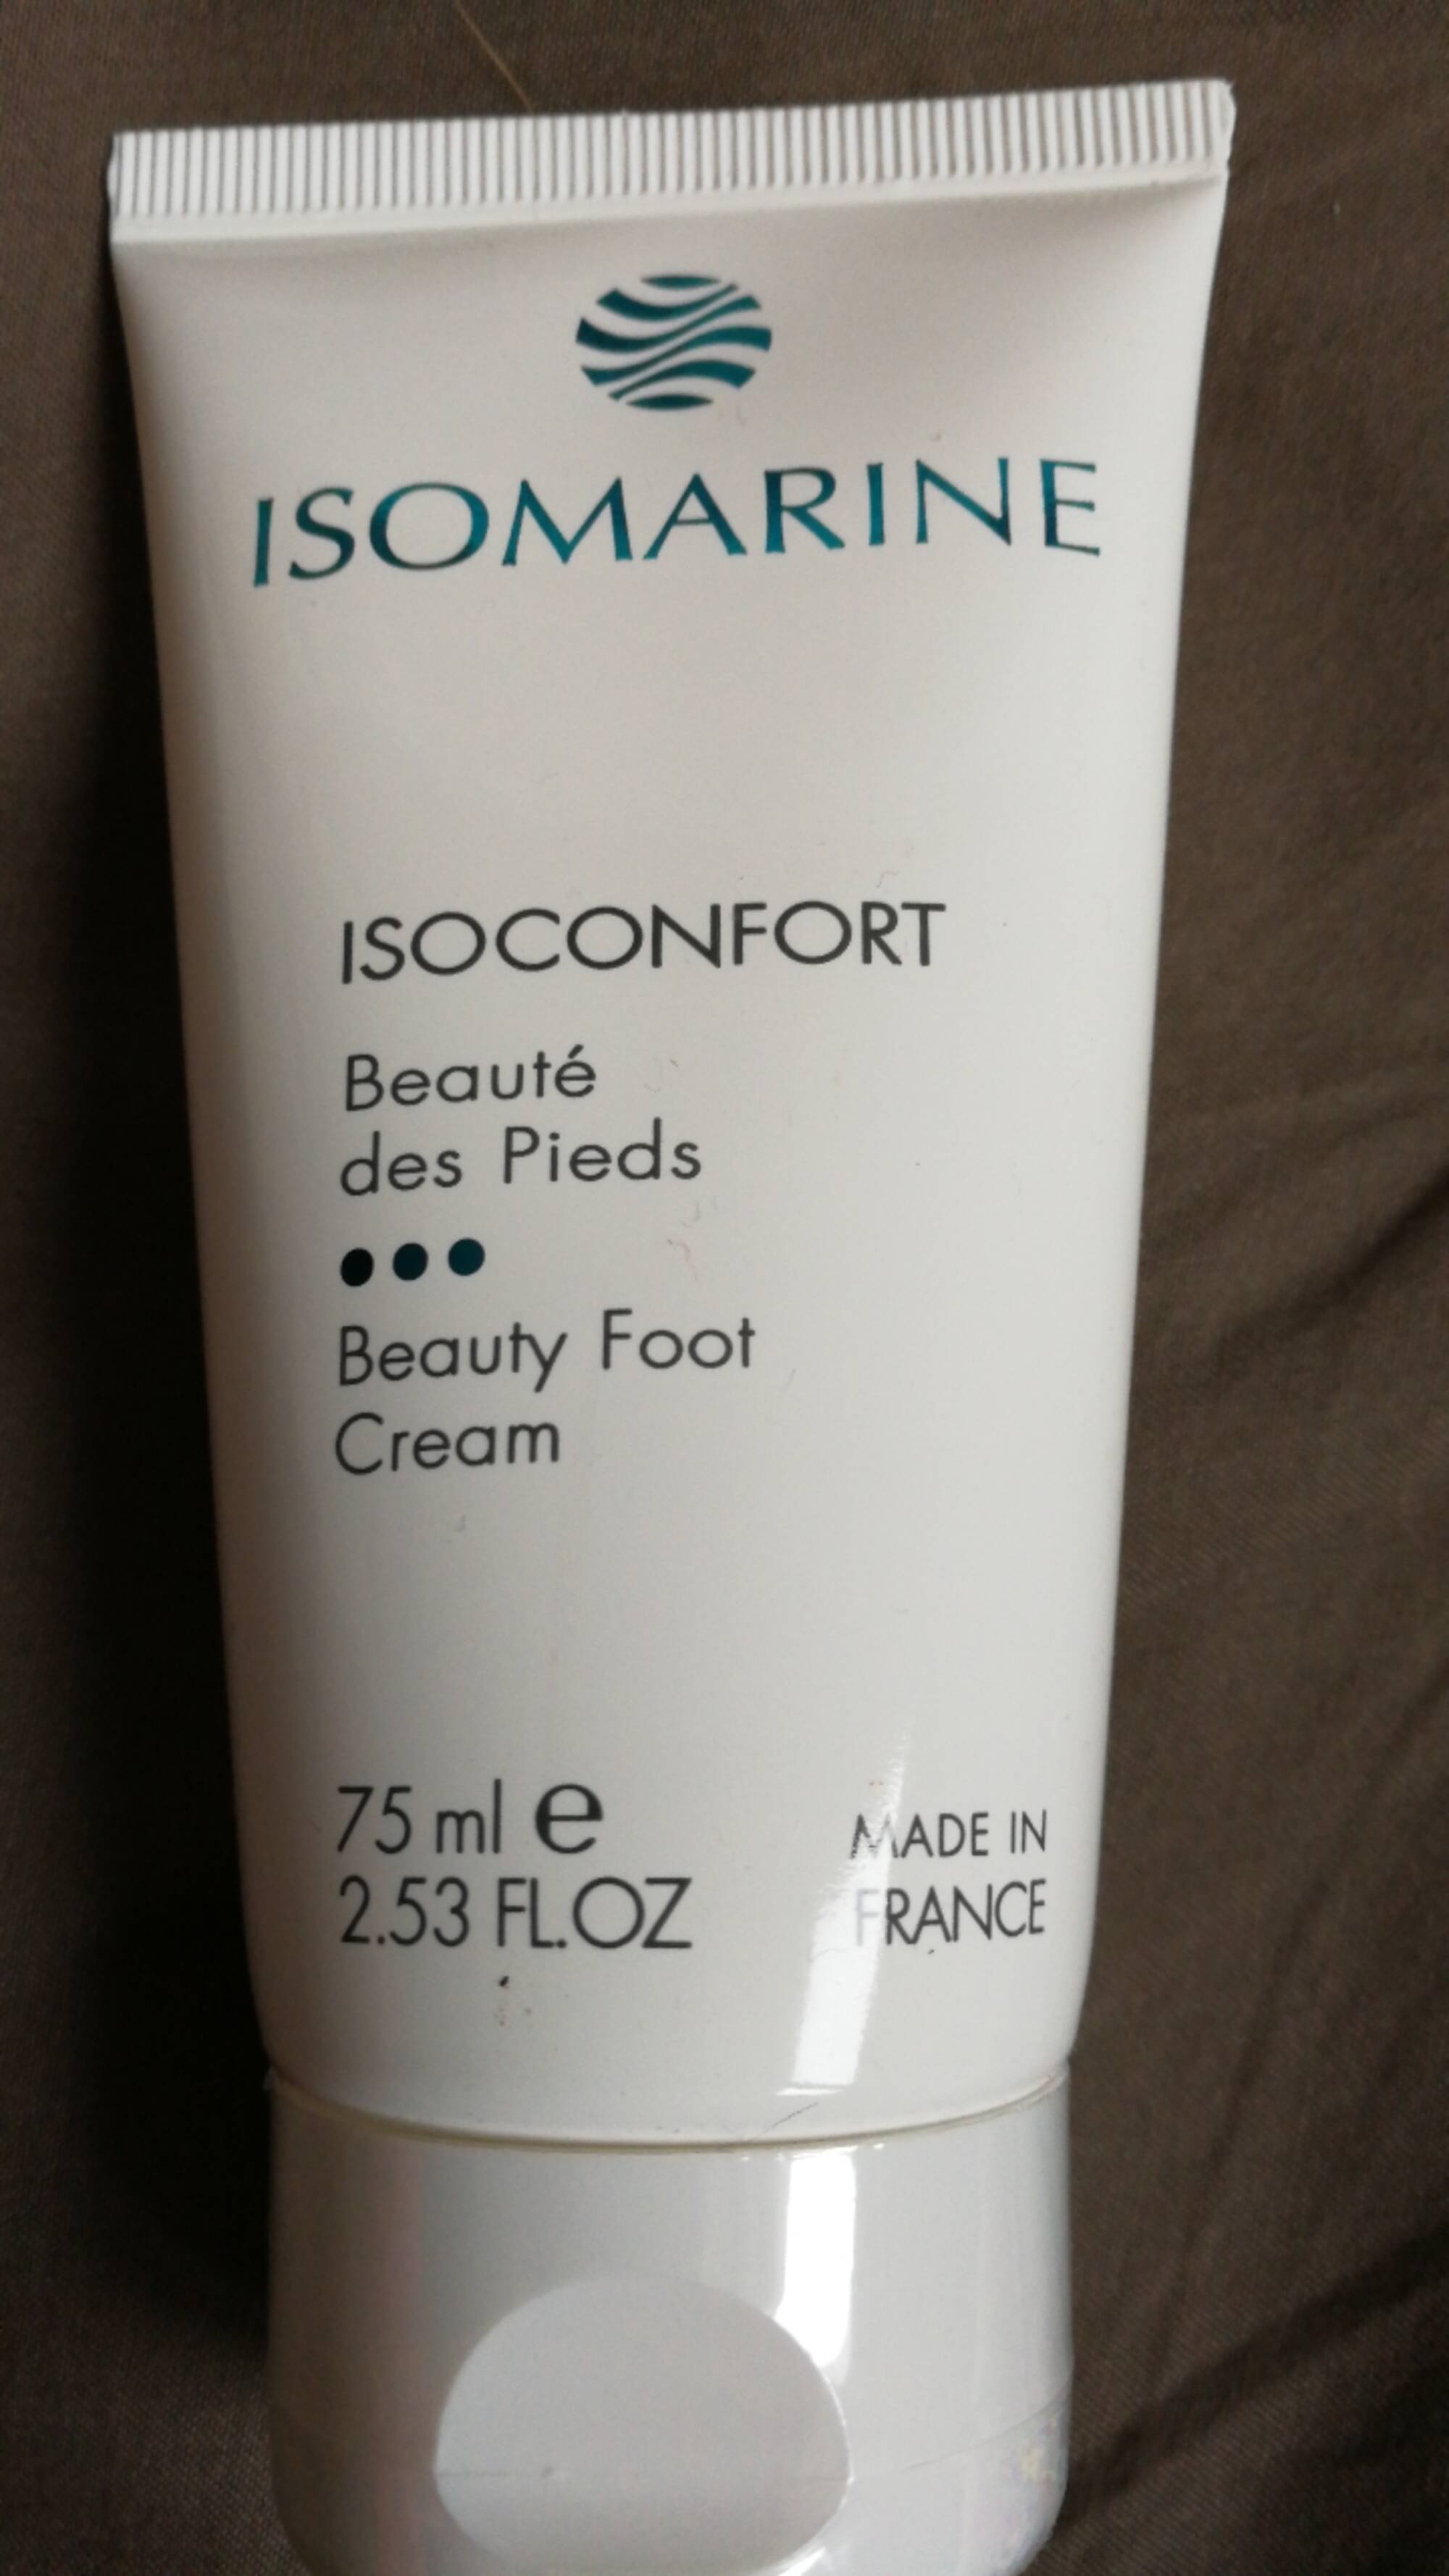 ISOMARINE - Isoconfort - Beauté des pieds